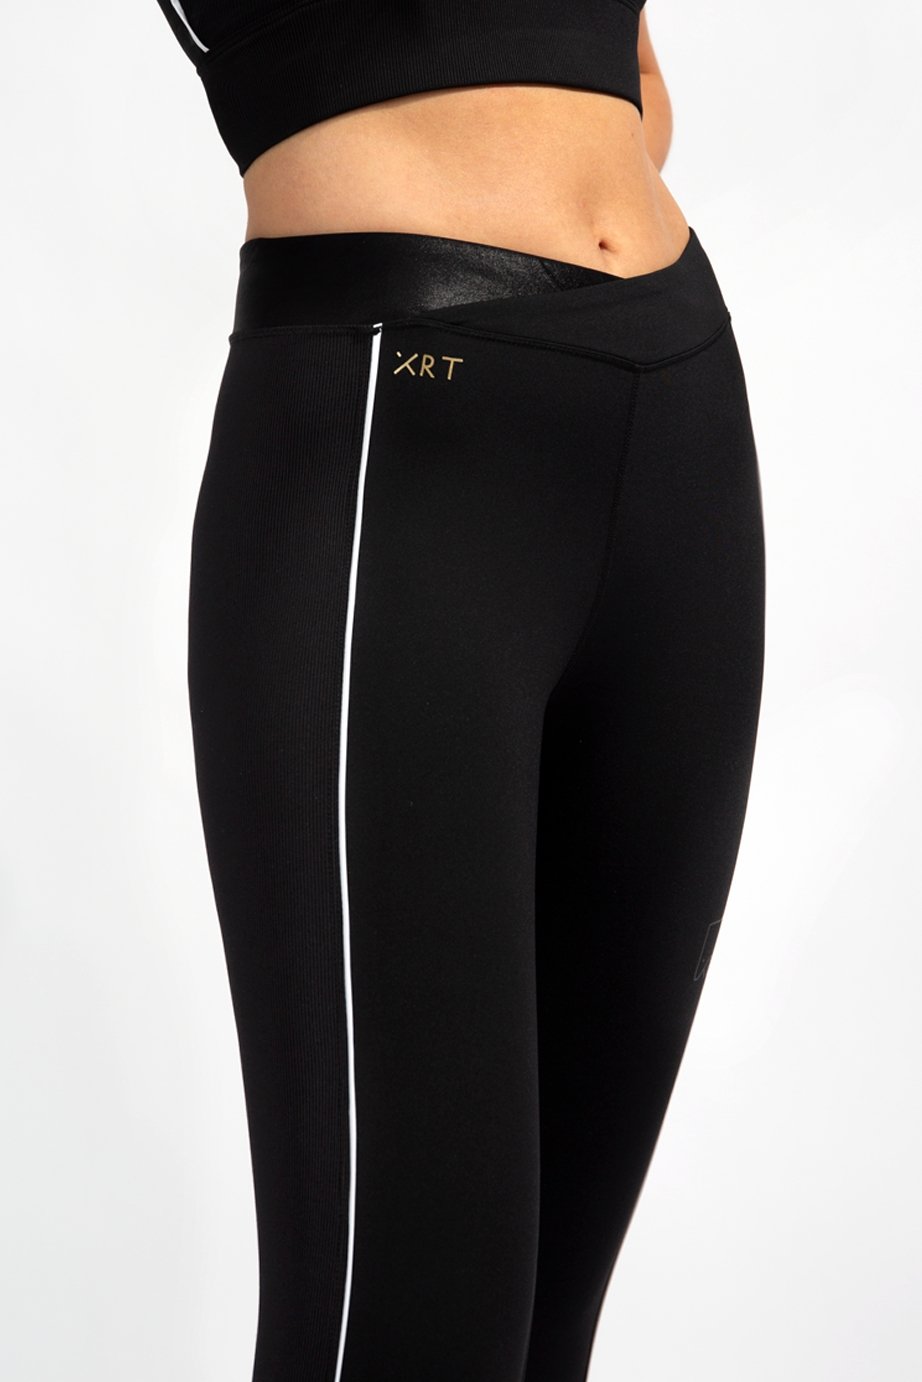 XRT women black leggings